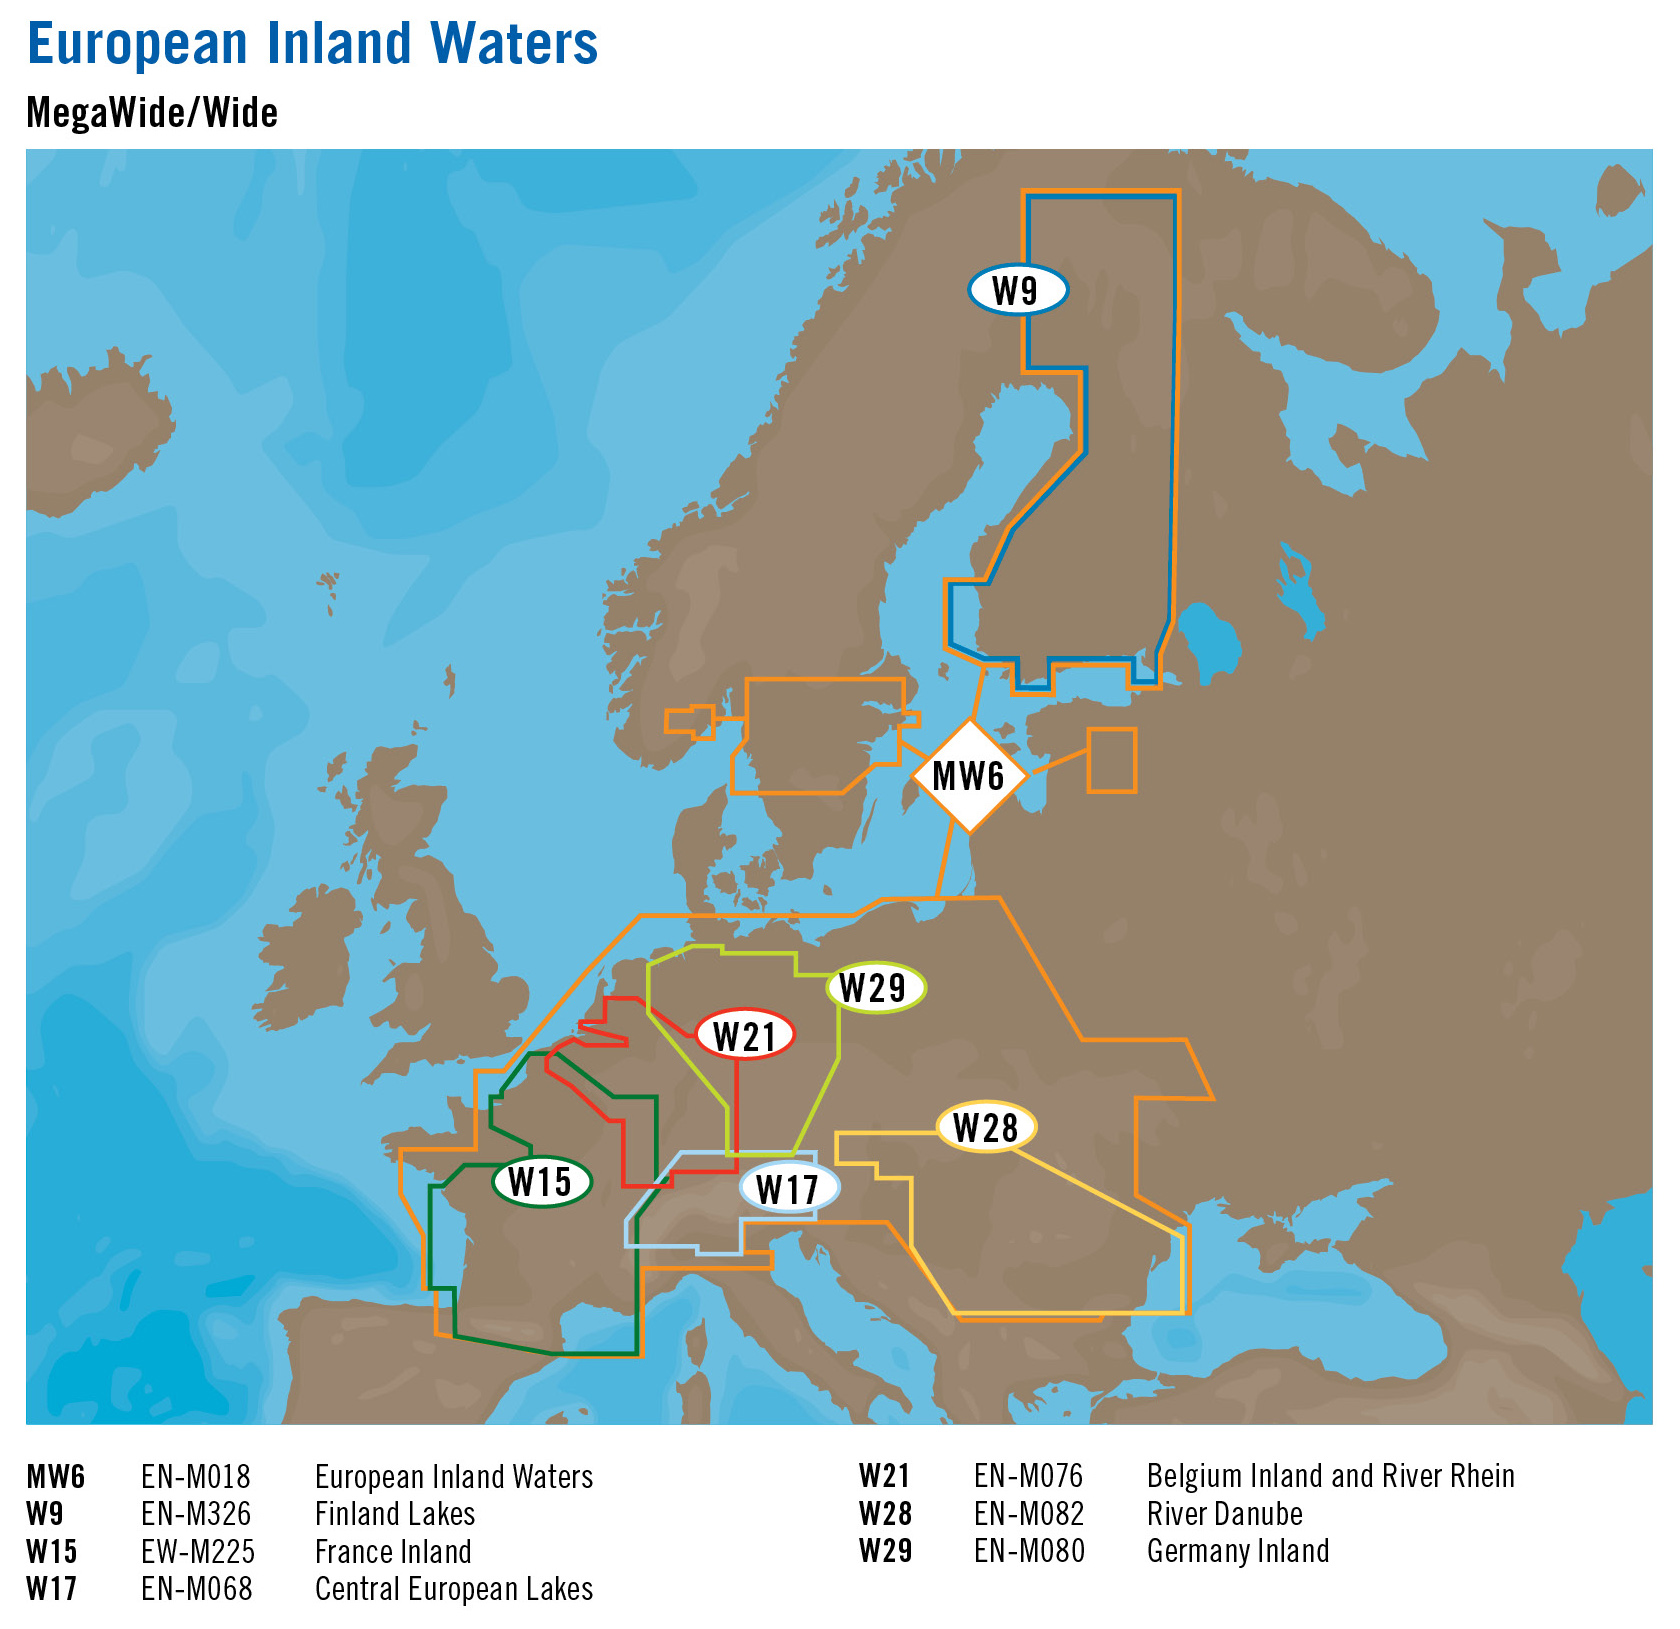  Wody rdldowe Europy, obszary   MW  i W           